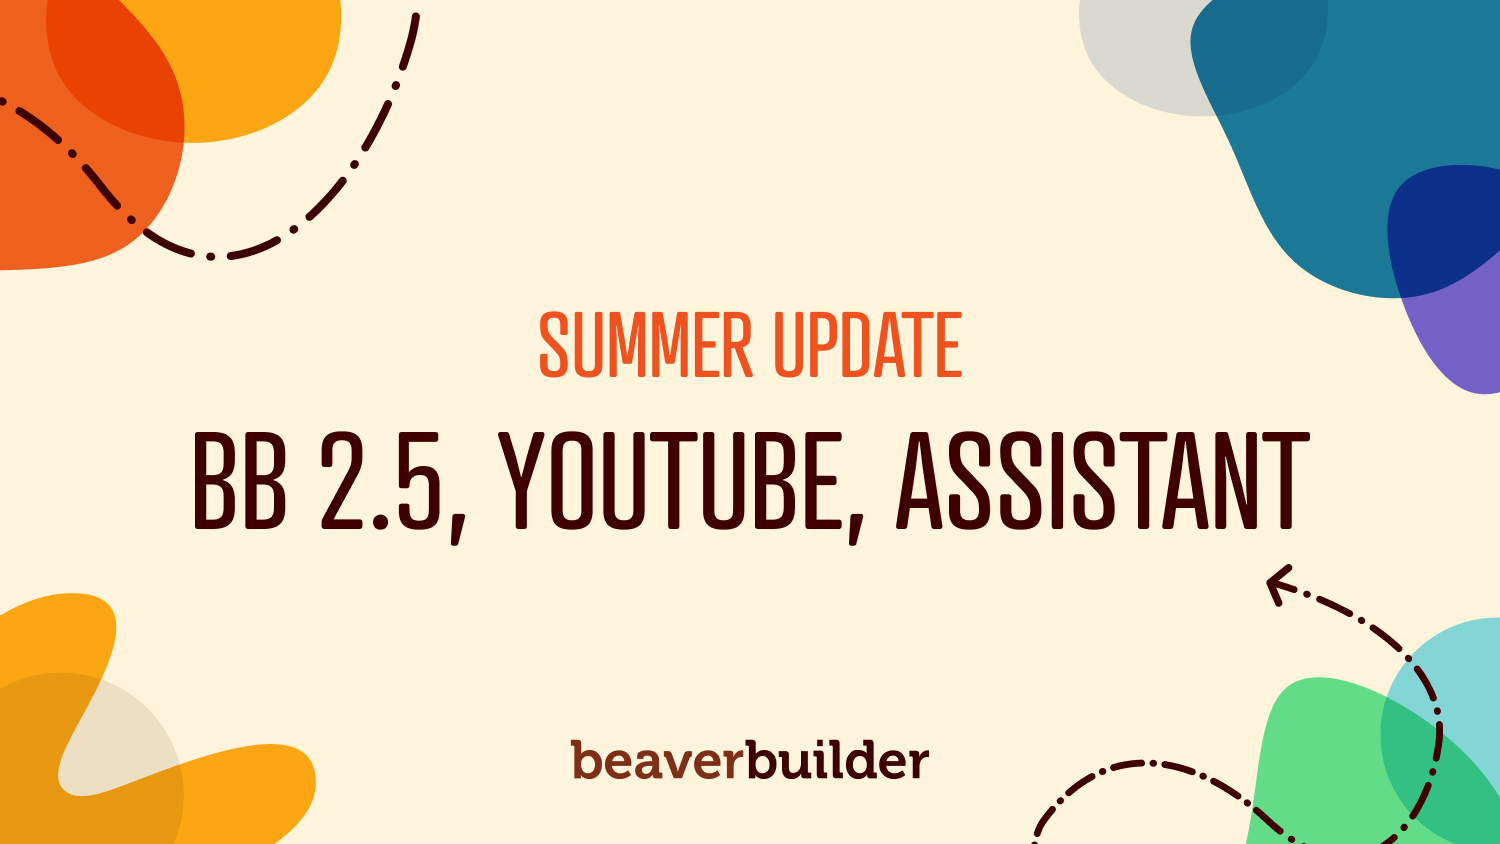 Summer Update BB 2.5